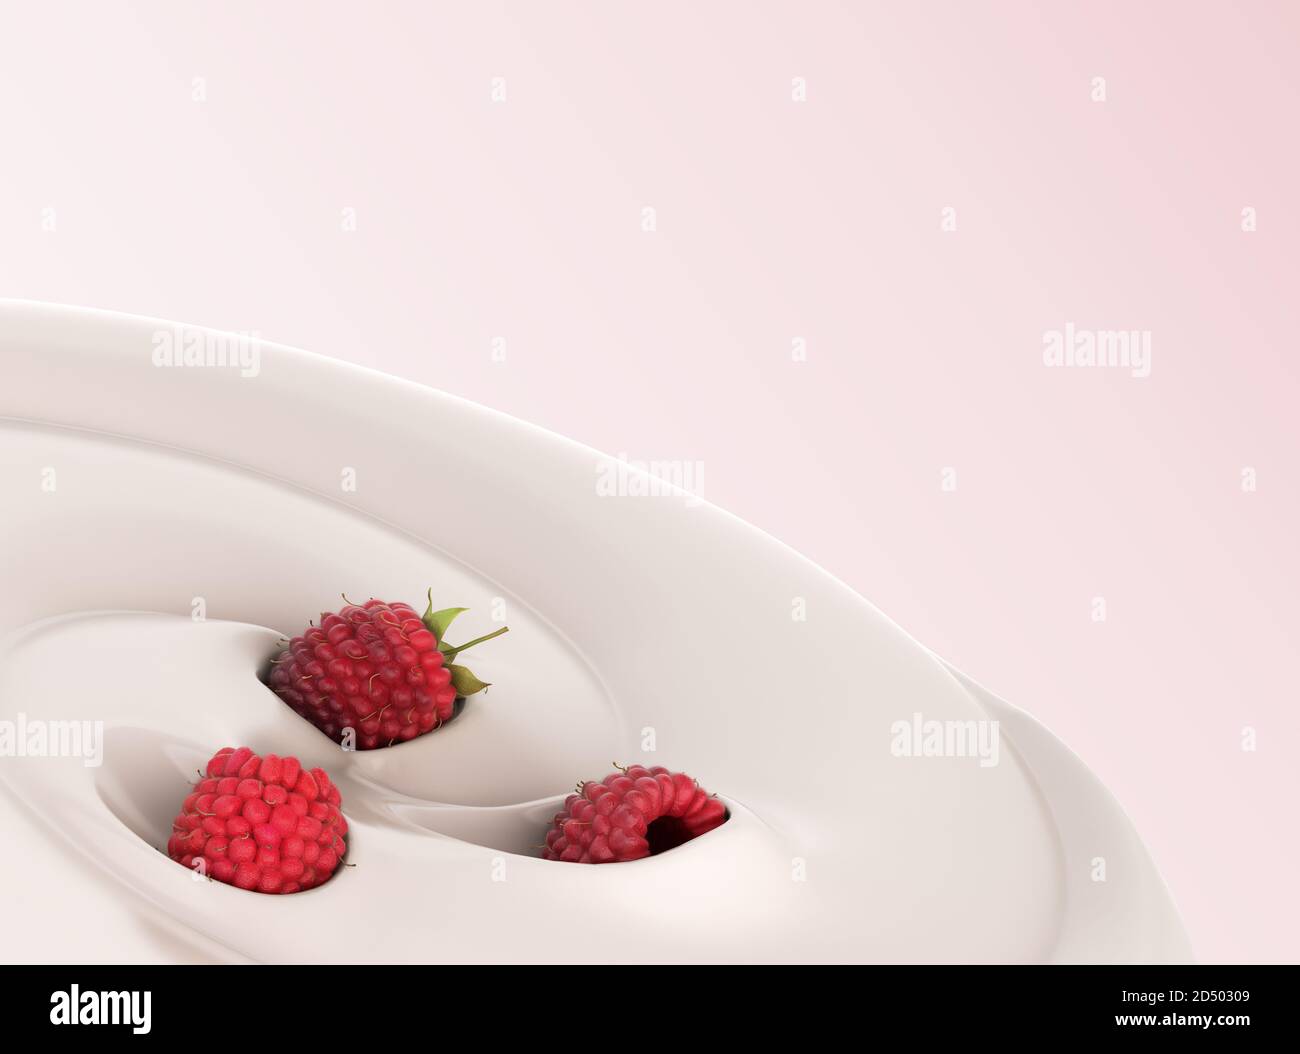 Himbeeren schweben in einem Joghurt Präsentation von Milchprodukten gewürzt 3d-Rendern von Bildern auf Farbverlauf Stockfoto